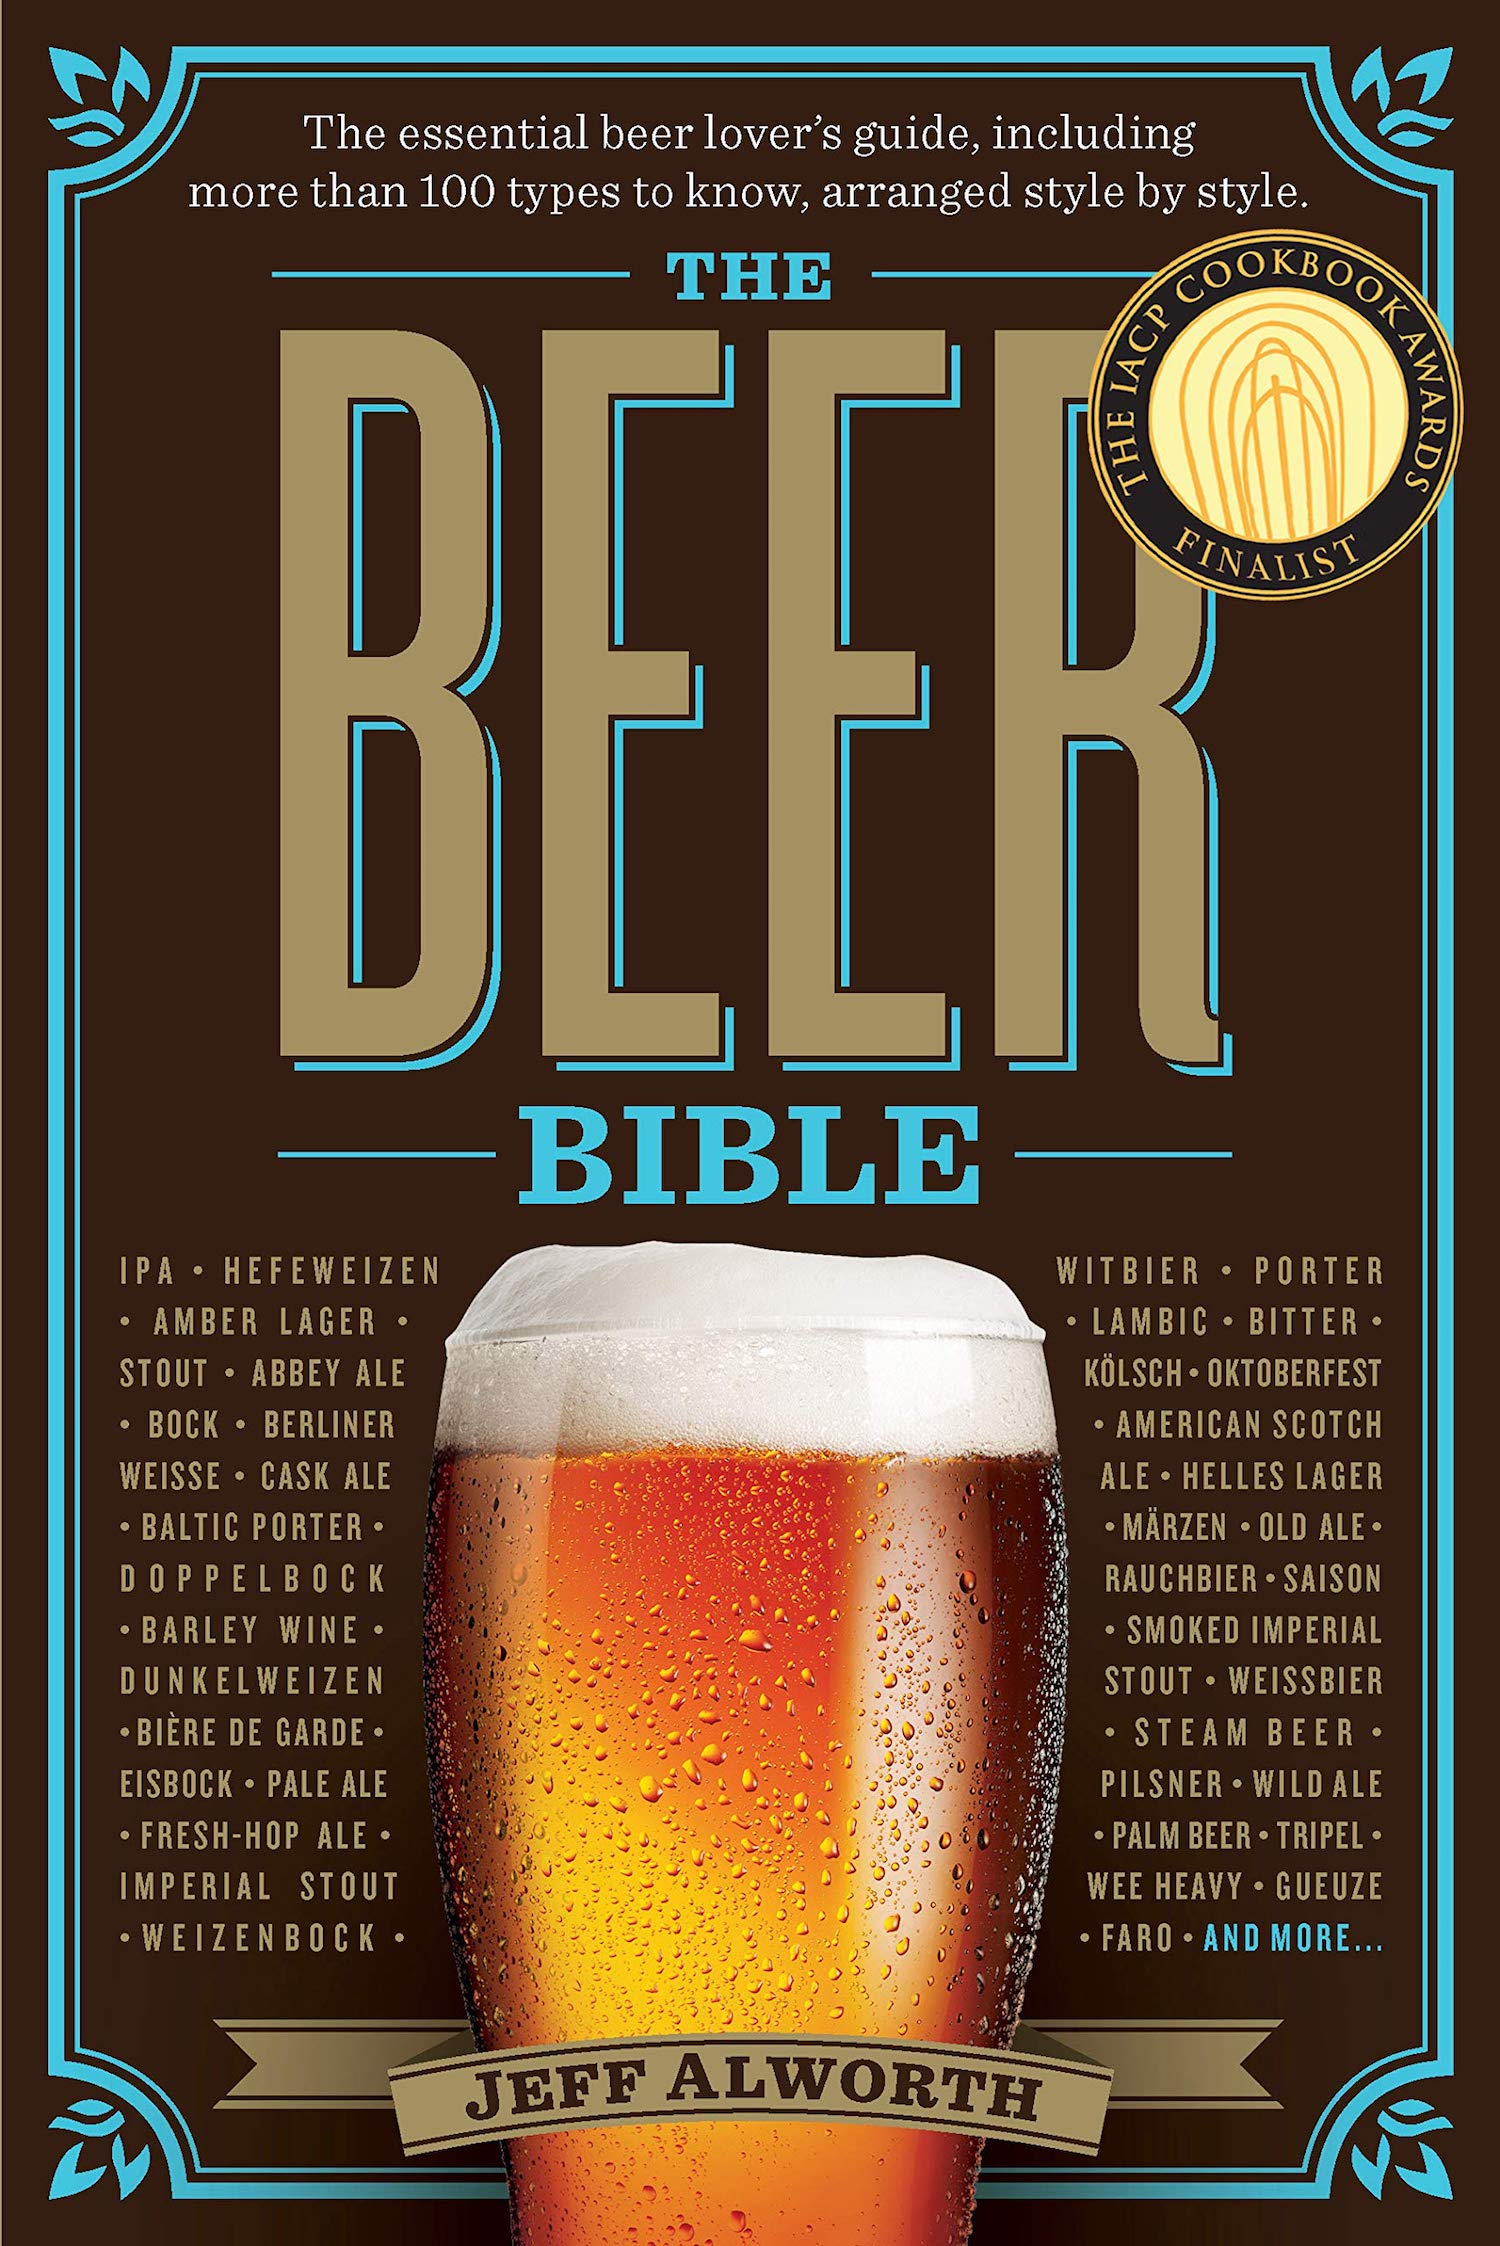 Beer Book